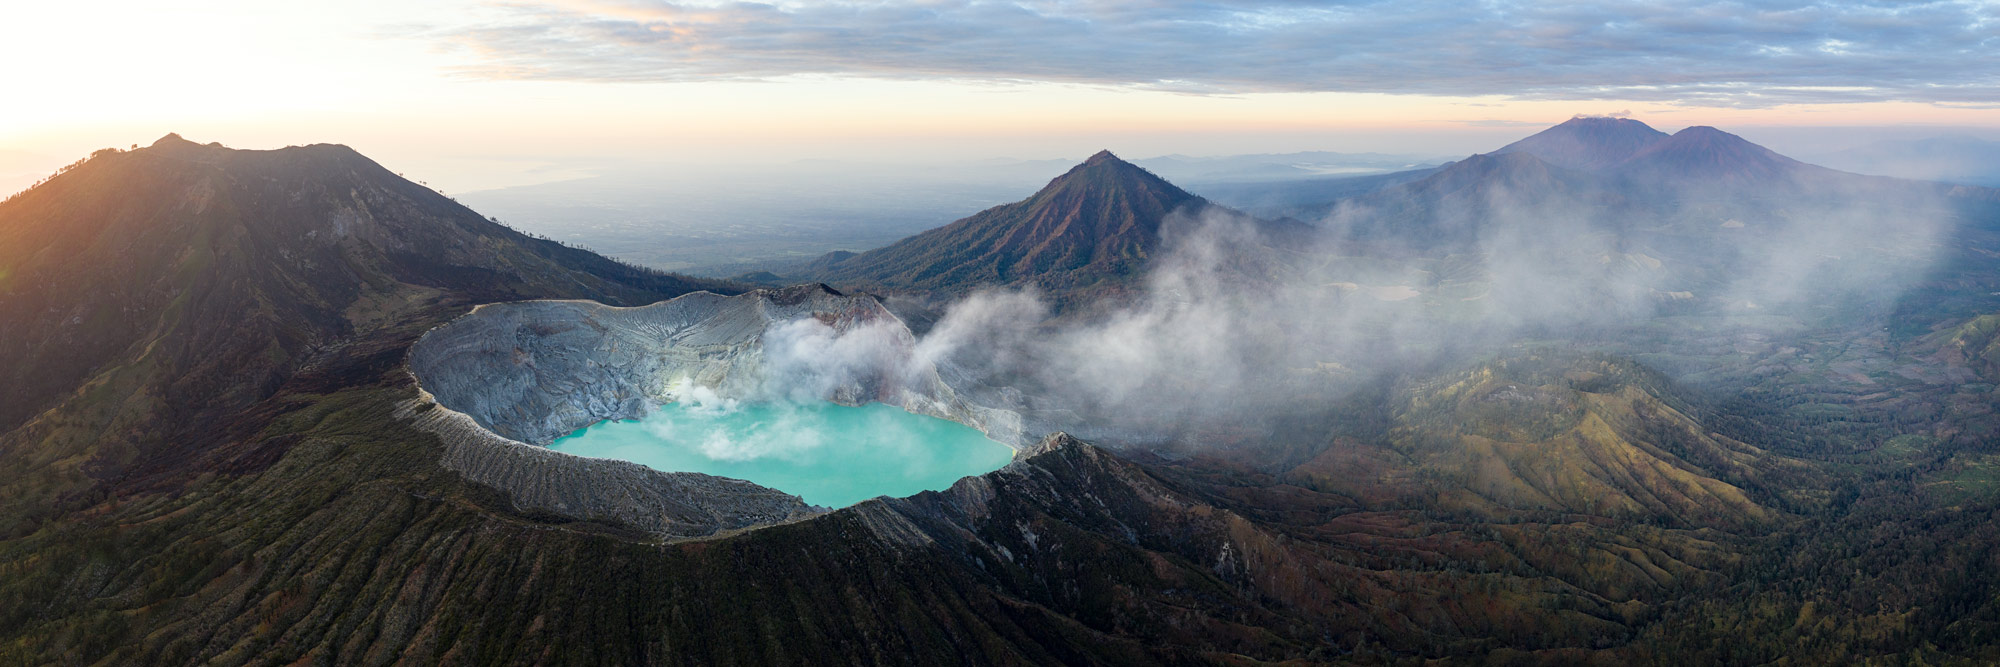 Amazing Mount Ijen Indonesia Aerial